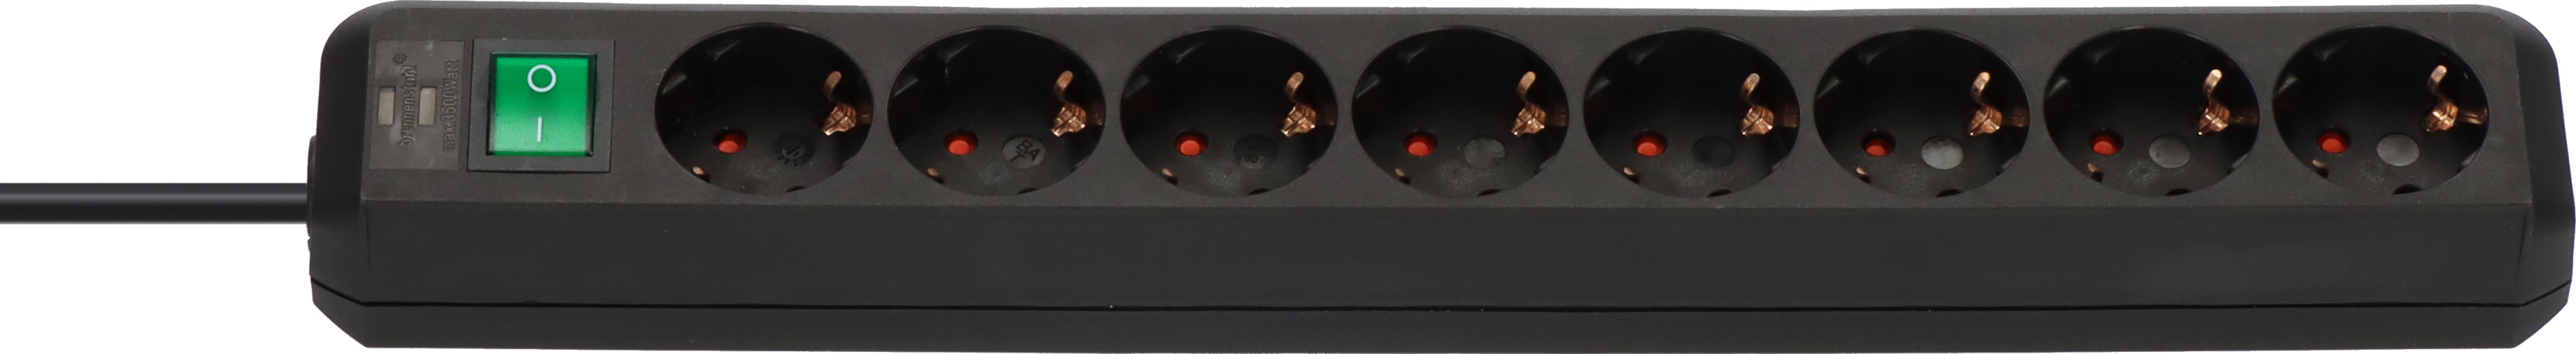 Regleta Premium-Alu-Line técnica 16-tomas Duo negro 3m H05VV-F 3G1,5  interruptor cada 8 tomas